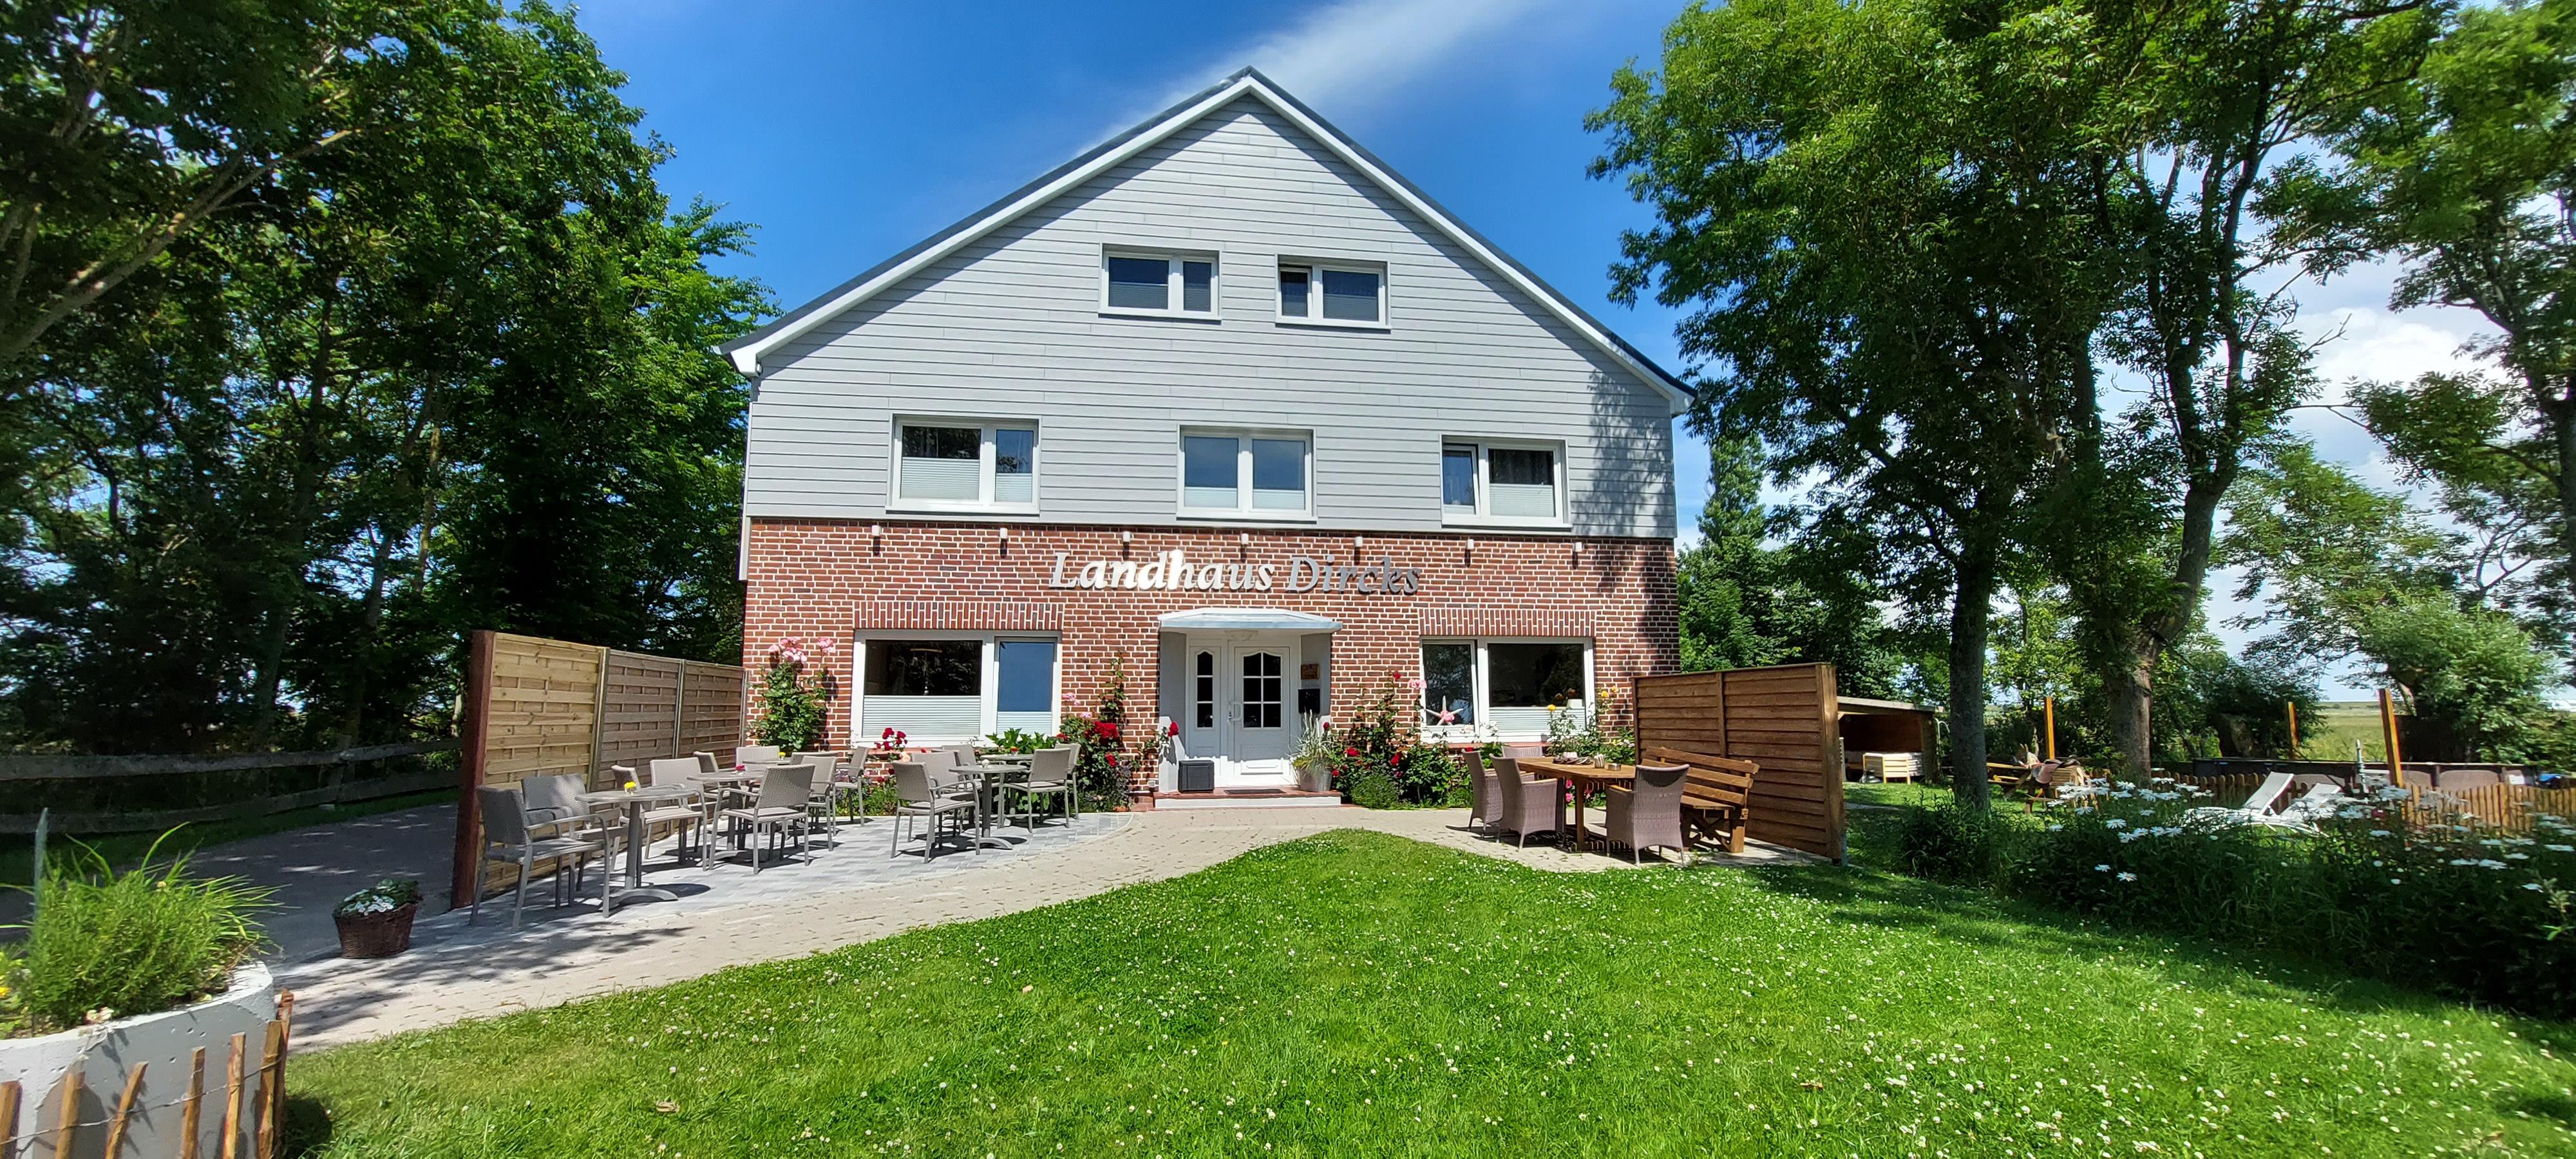 Landhaus Dircks 3-Personen-Appartement Ferienwohnung in Schleswig Holstein